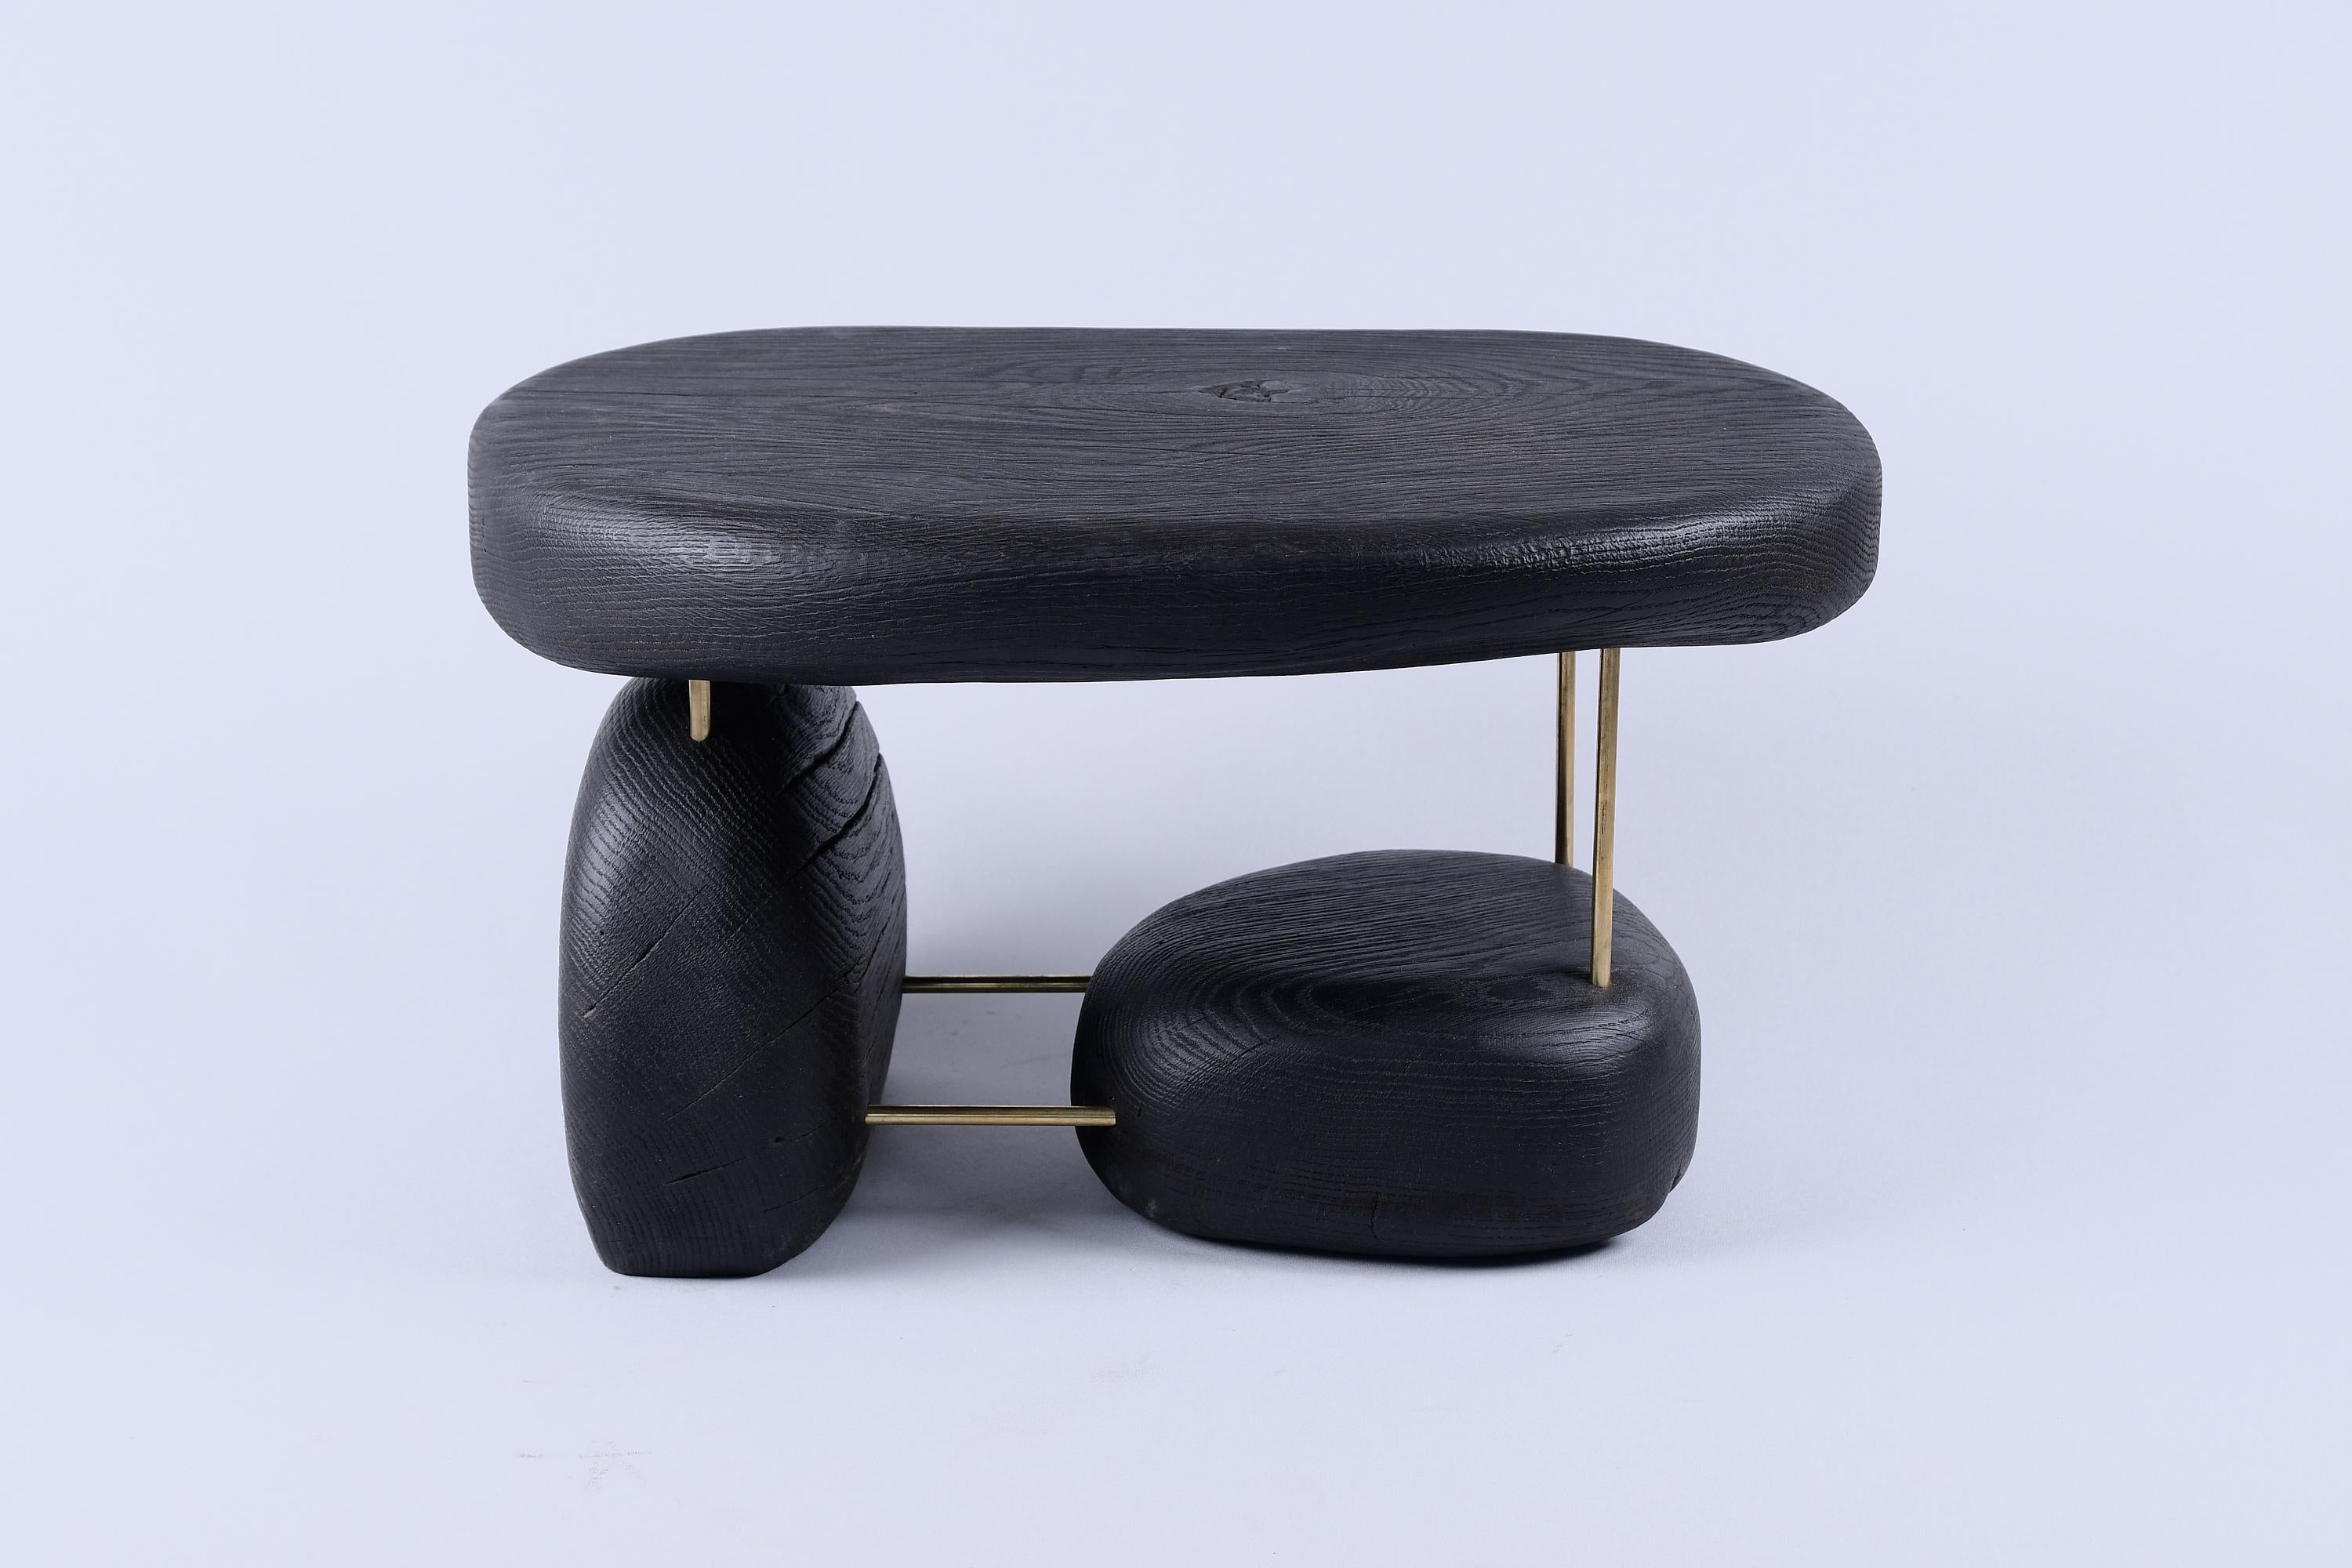 Pièce unique en bois multifonctionnelle pouvant servir de table d'appoint, de tabouret ou simplement d'objet décoratif. Il est fabriqué à partir d'une combinaison de chêne brûlé de haute qualité et de laiton, et protégé par des huiles de la plus